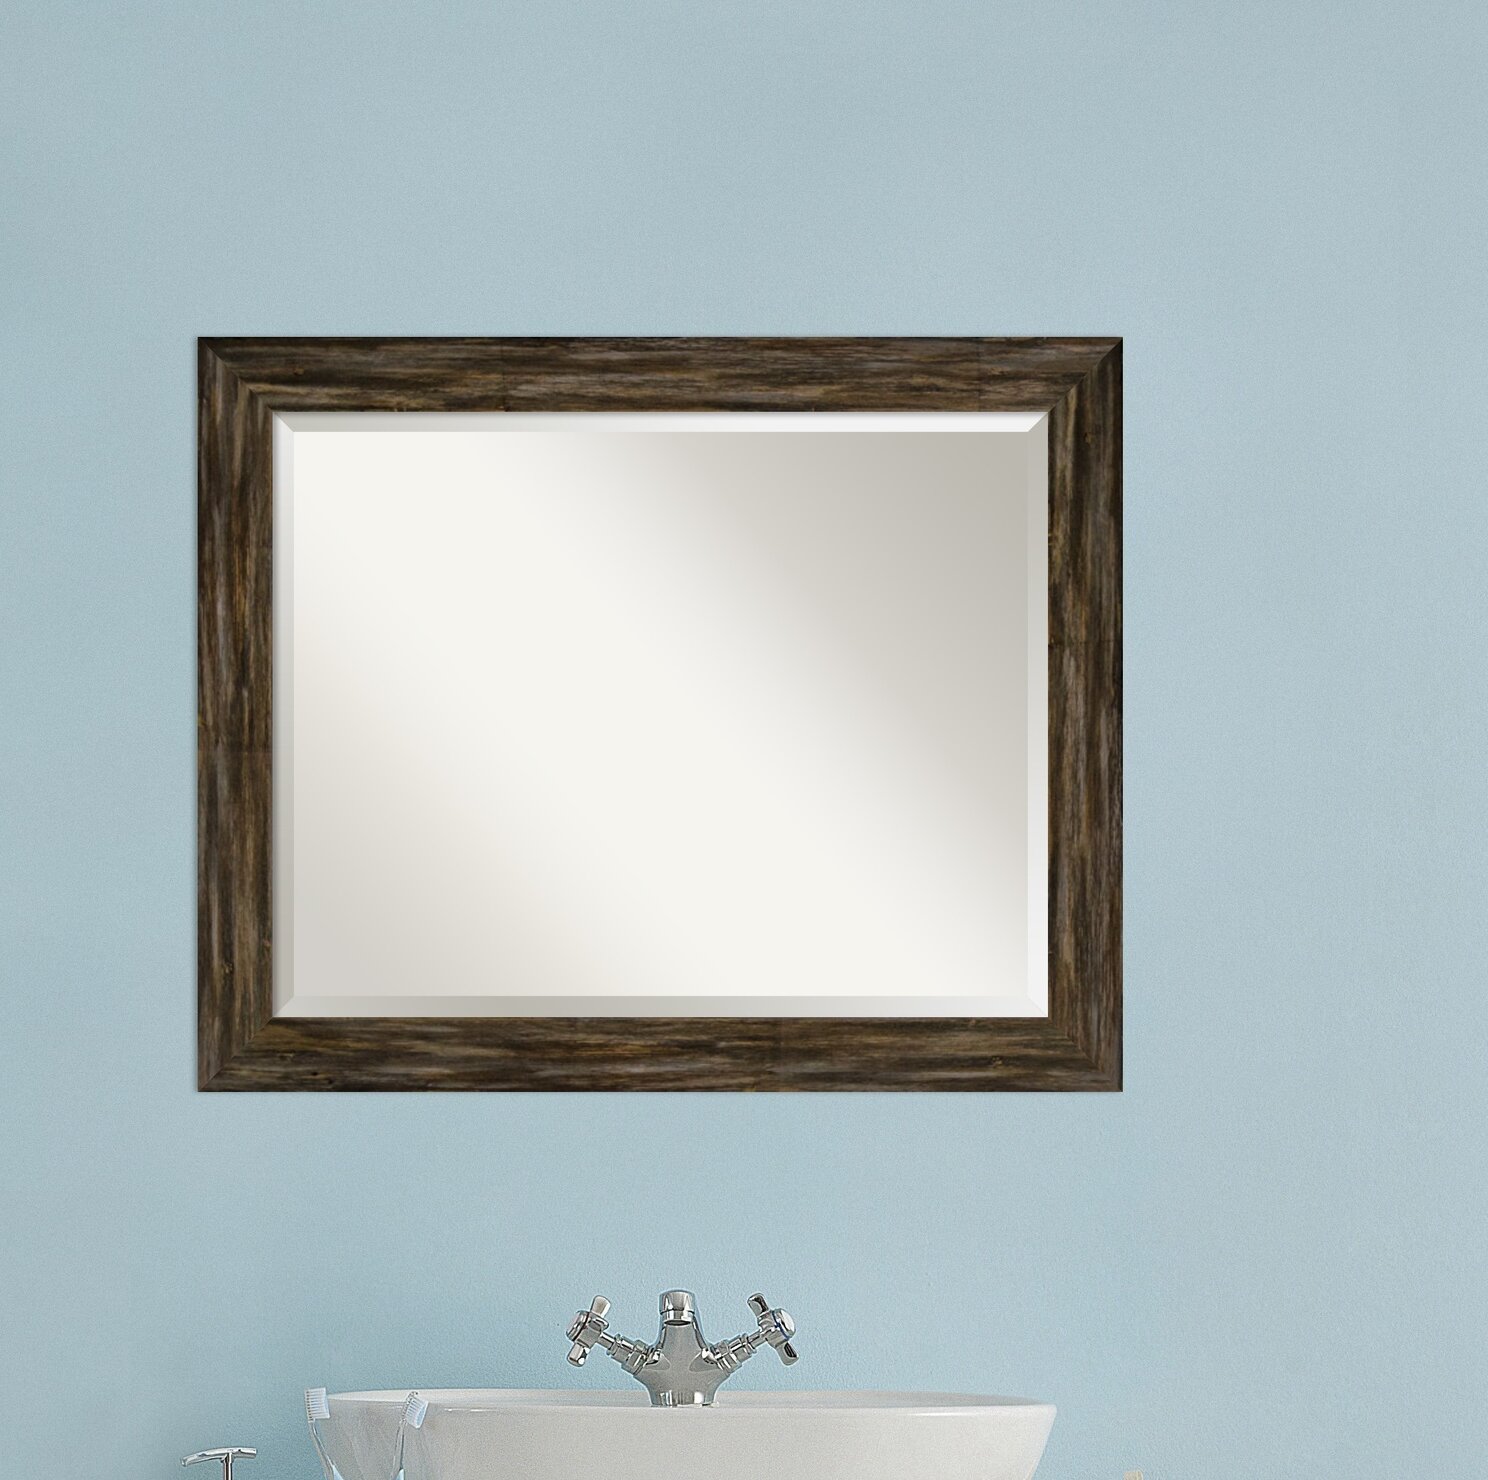 Amanti Art Fencepost Brown Narrow Rustic Bathroom Vanity Mirror Reviews Wayfair